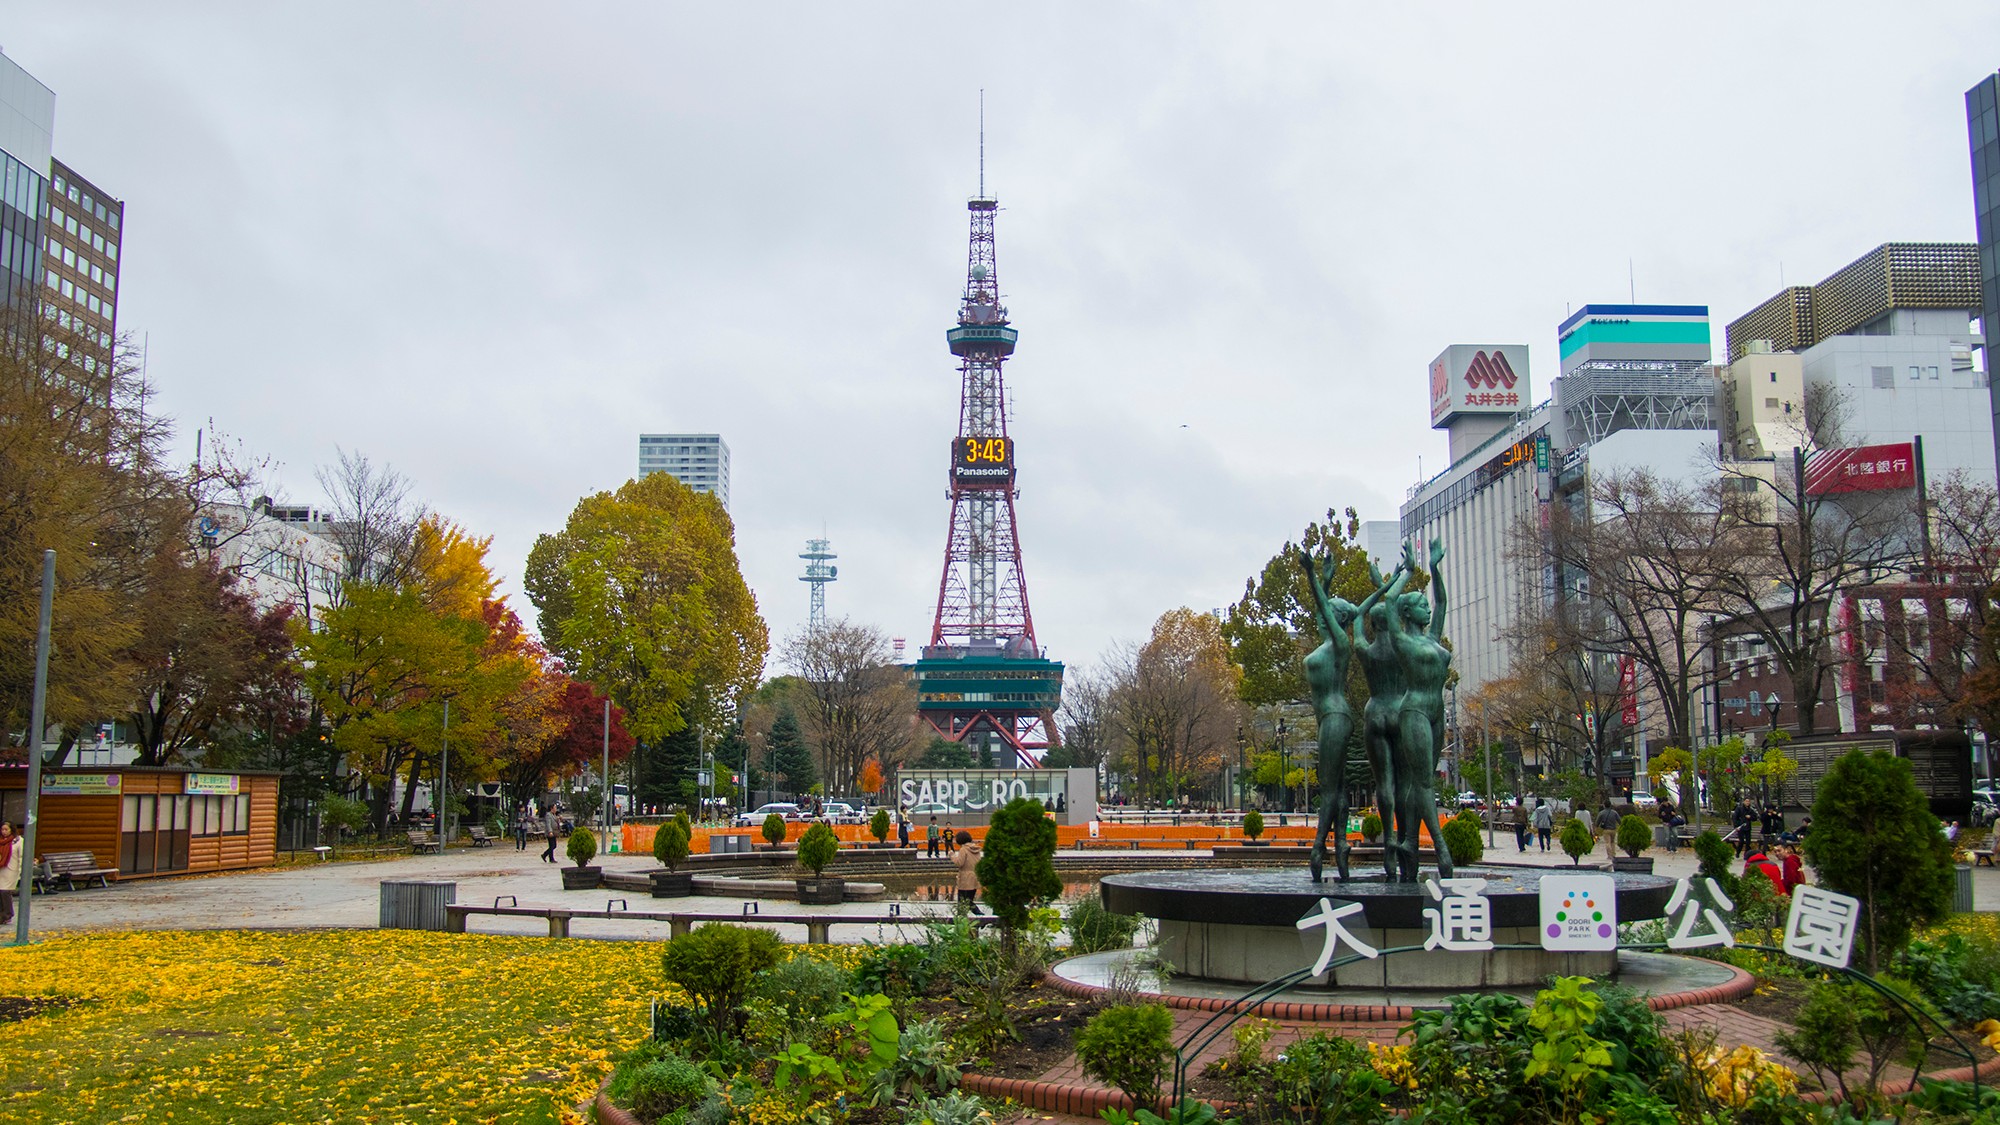 【大通り公園】札幌市の中心部に位置する大通公園。一年を通して様々なイベントが行われています。